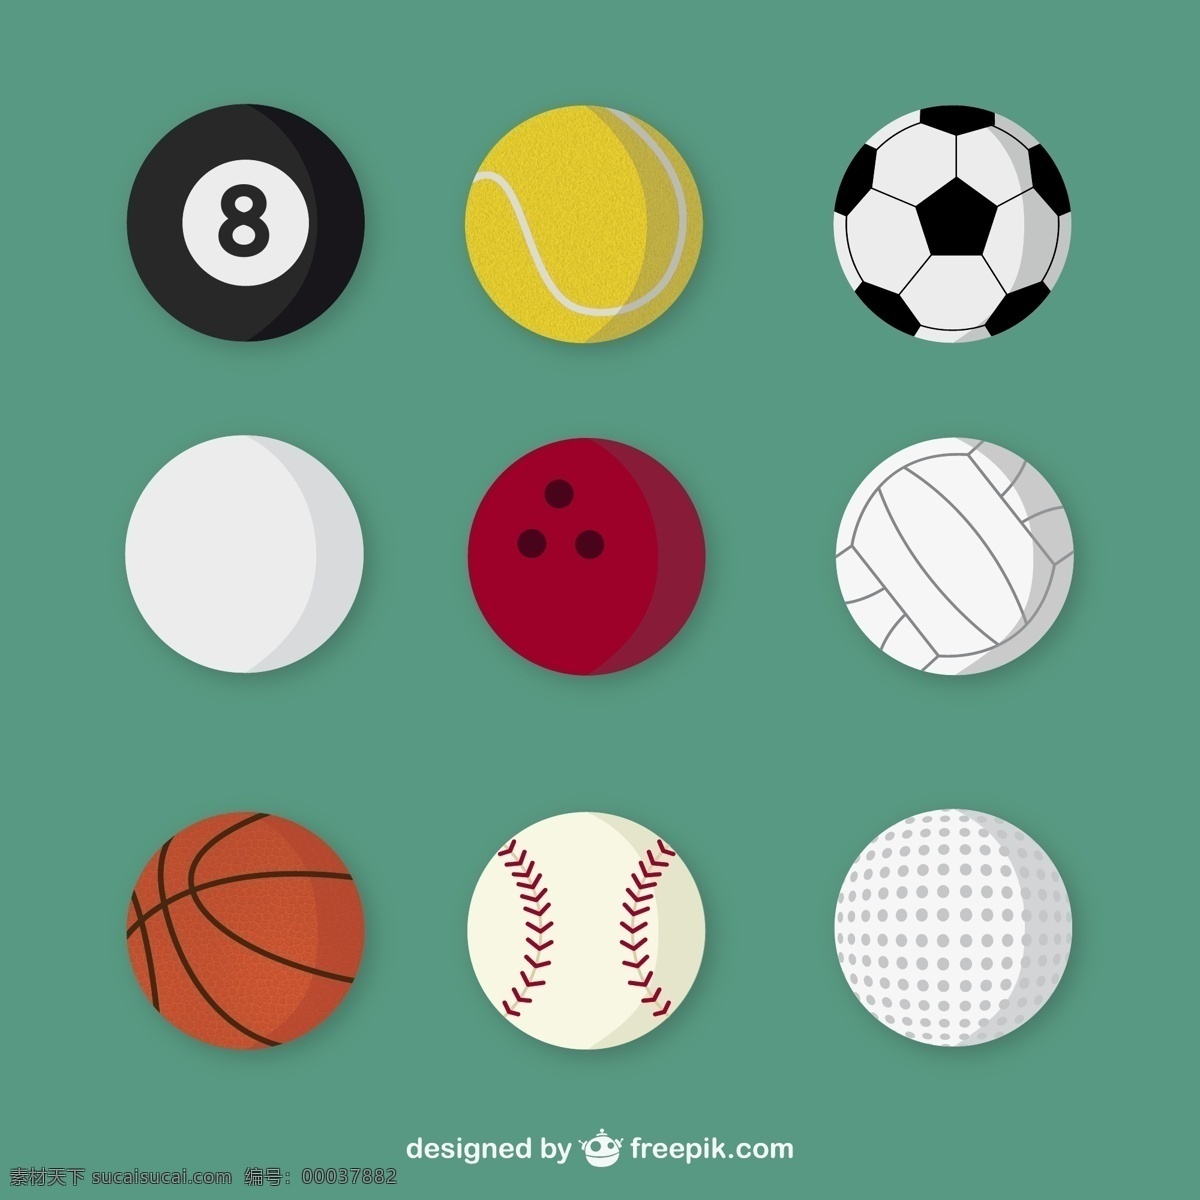 款 精美 球 具 矢量 台球 棒球 足球 排球 保龄球 网球 高尔夫球 体育用品 球具 矢量图 青色 天蓝色